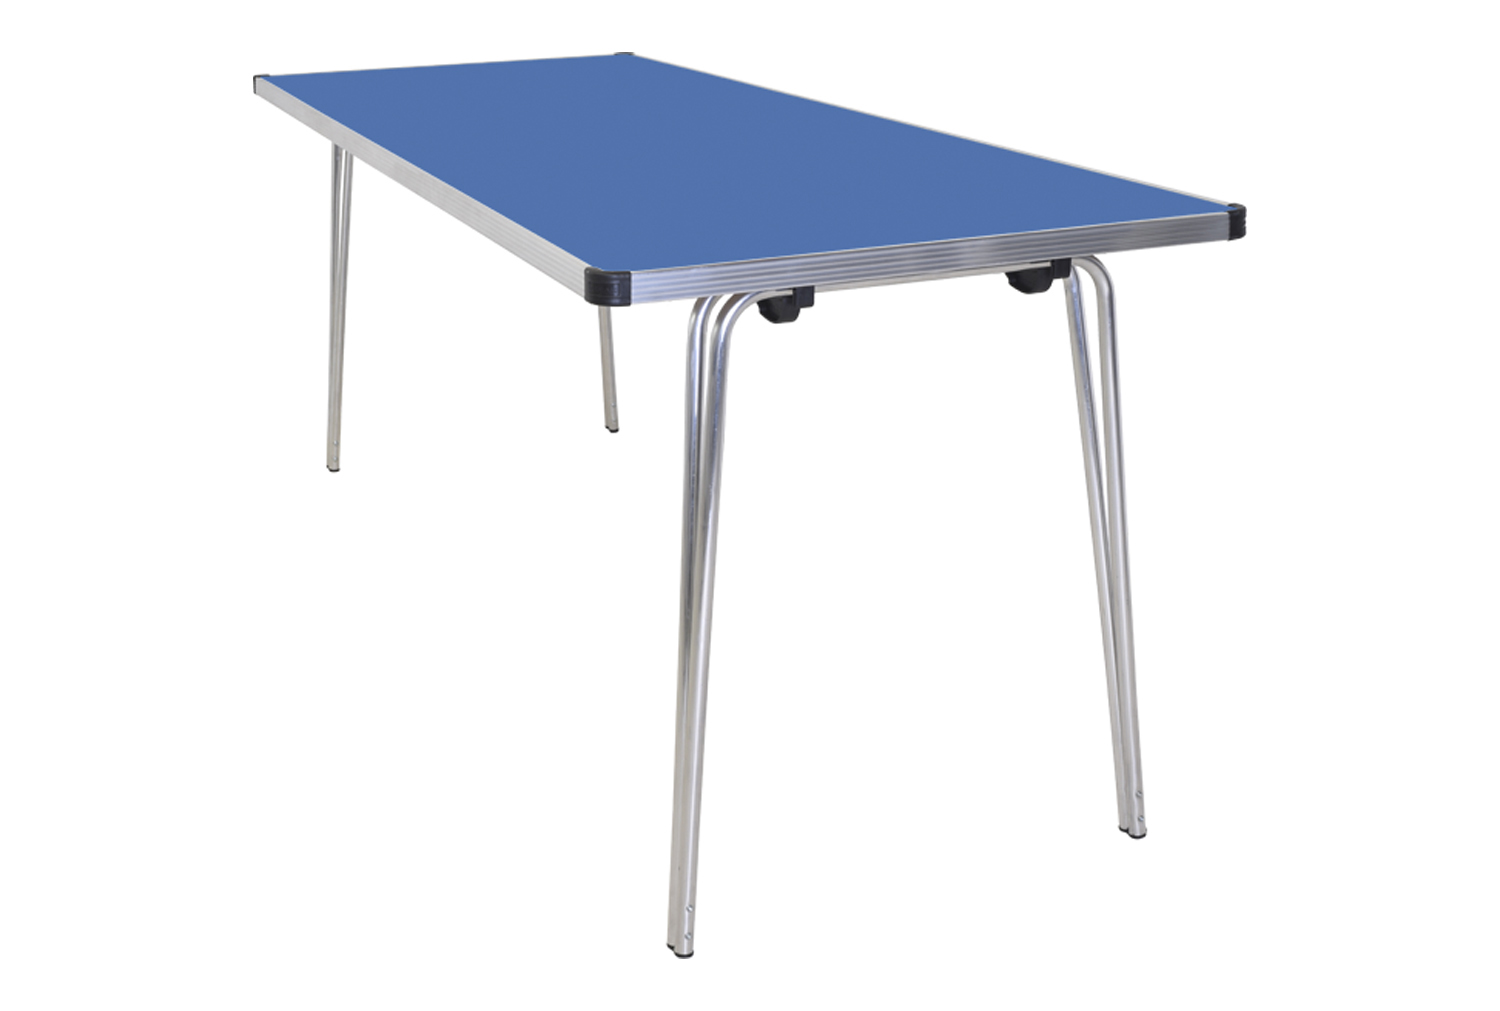 Gopak Contour Folding Table, 122wx61d (cm), Azure Blue